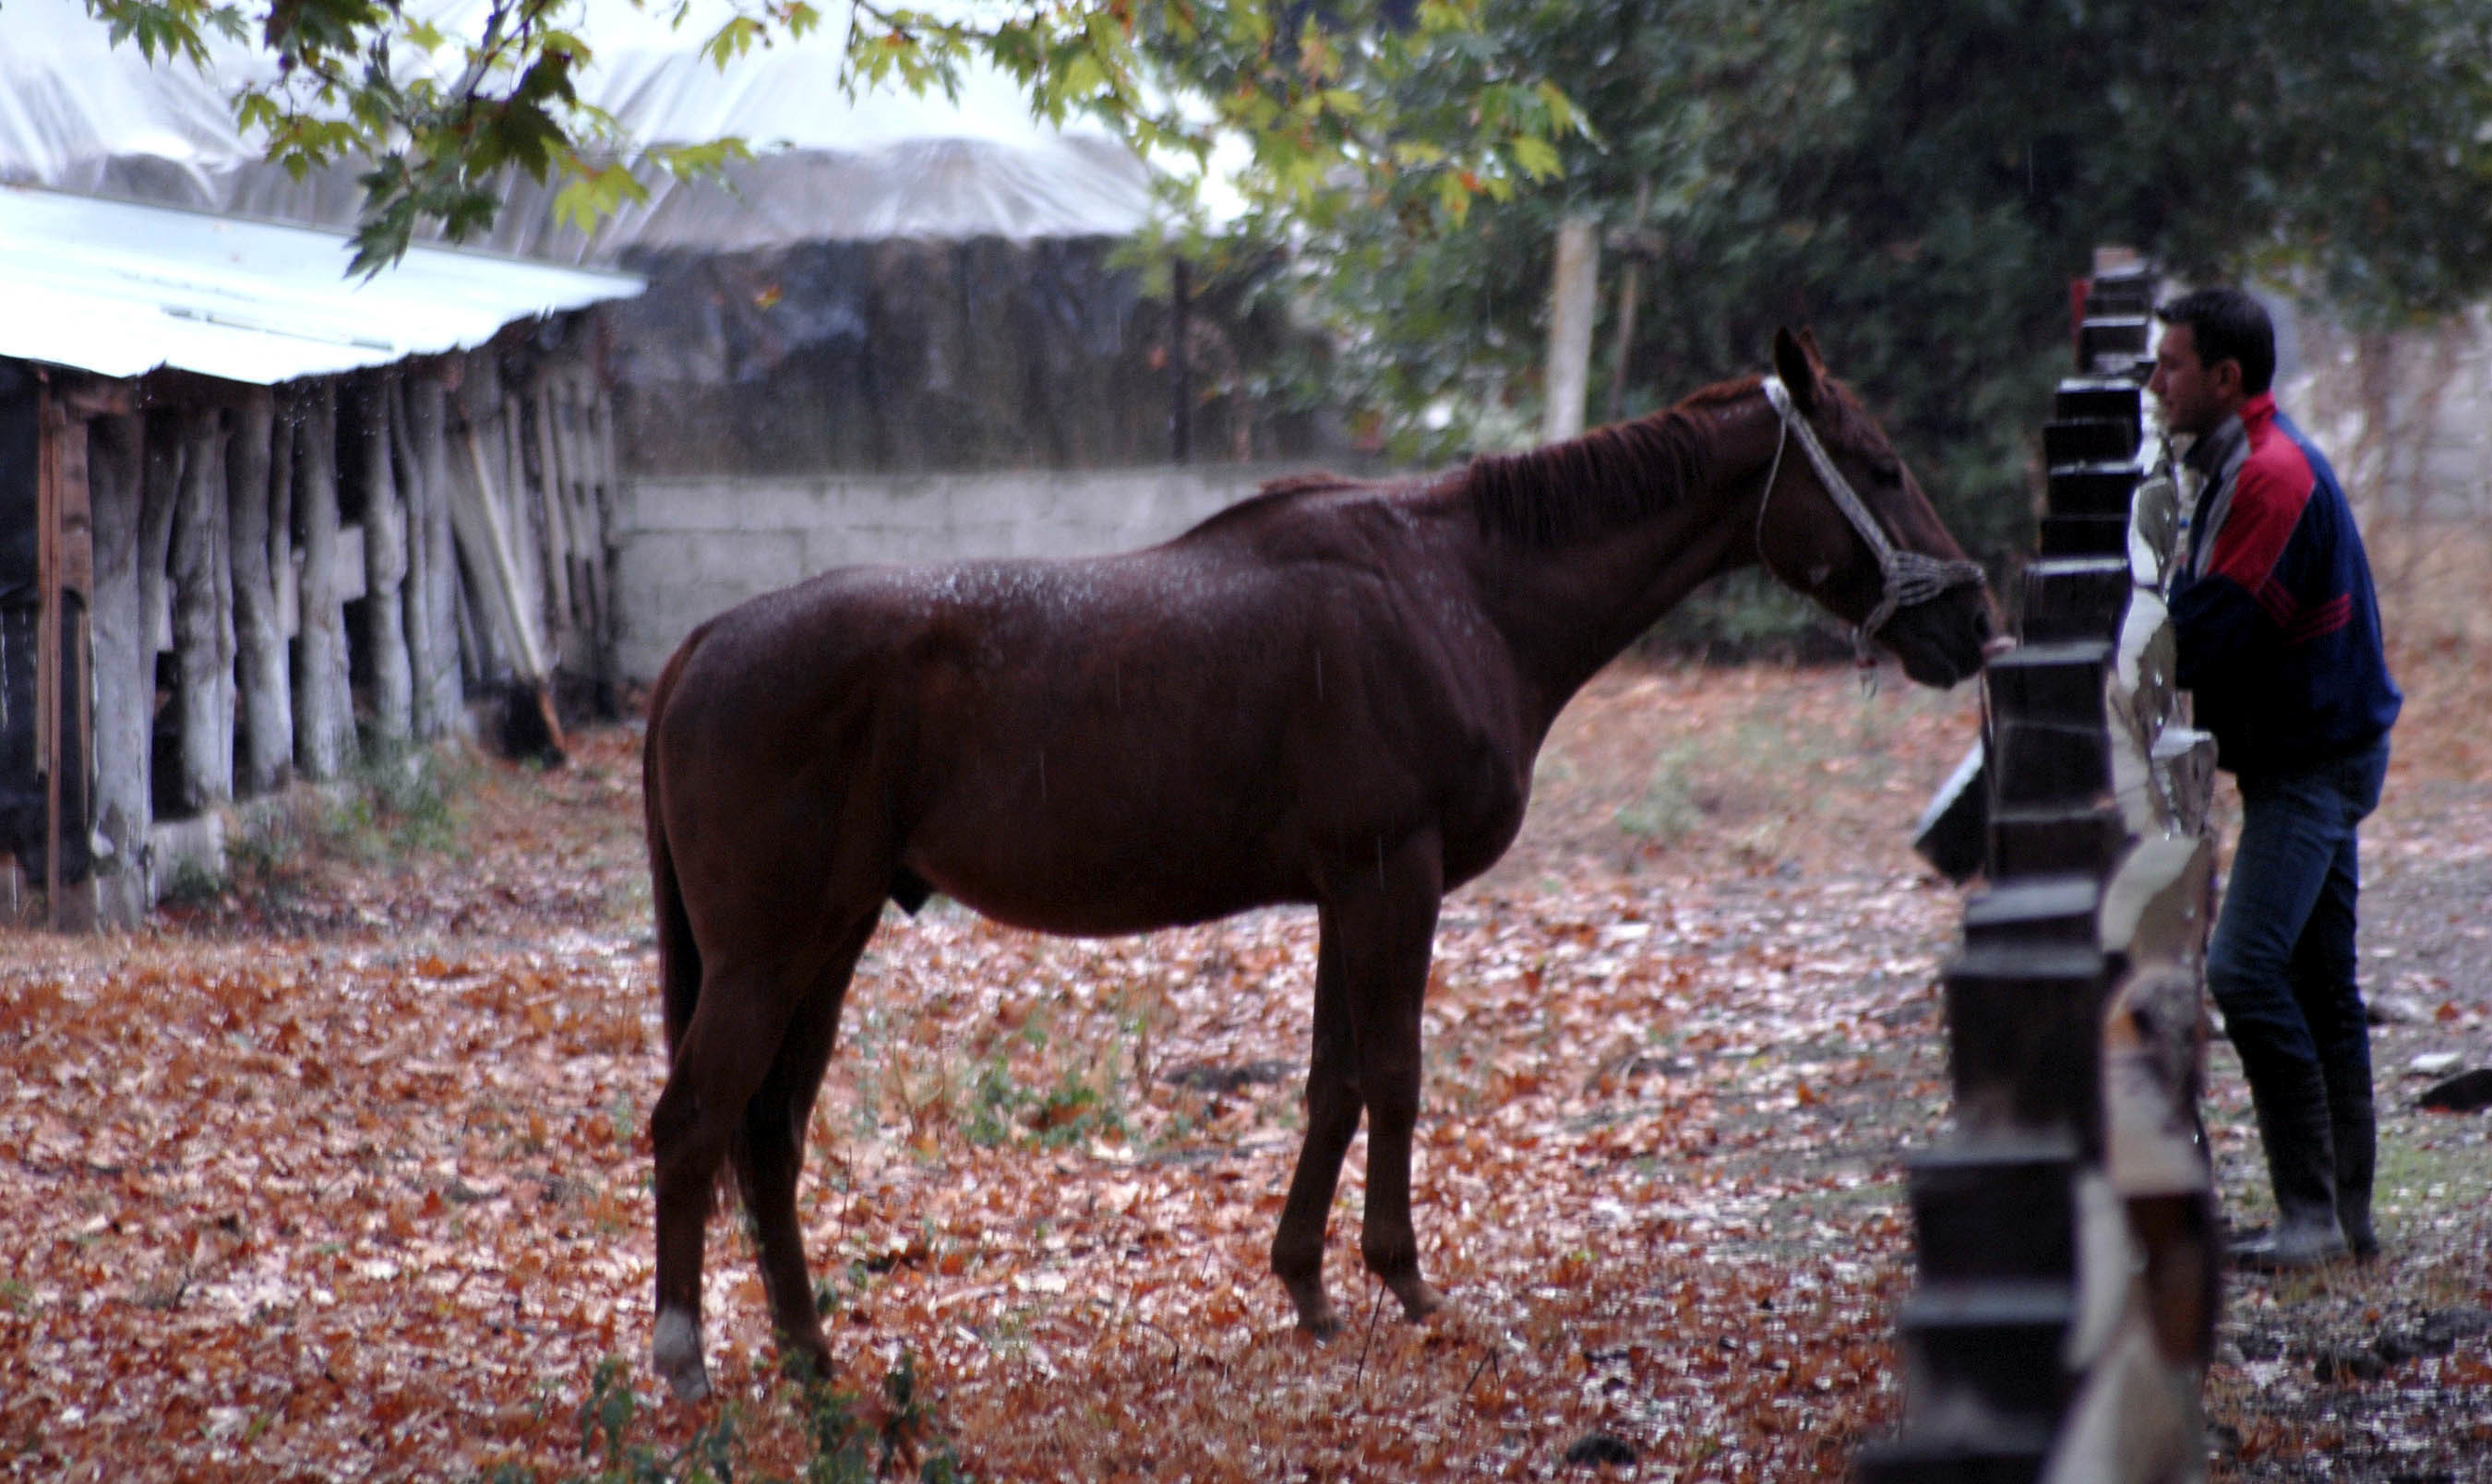 Έκαναν ευθανασία στο άλογο για να γλιτώσει από τους πόνους - ΦΩΤΟ EUROKINISSI